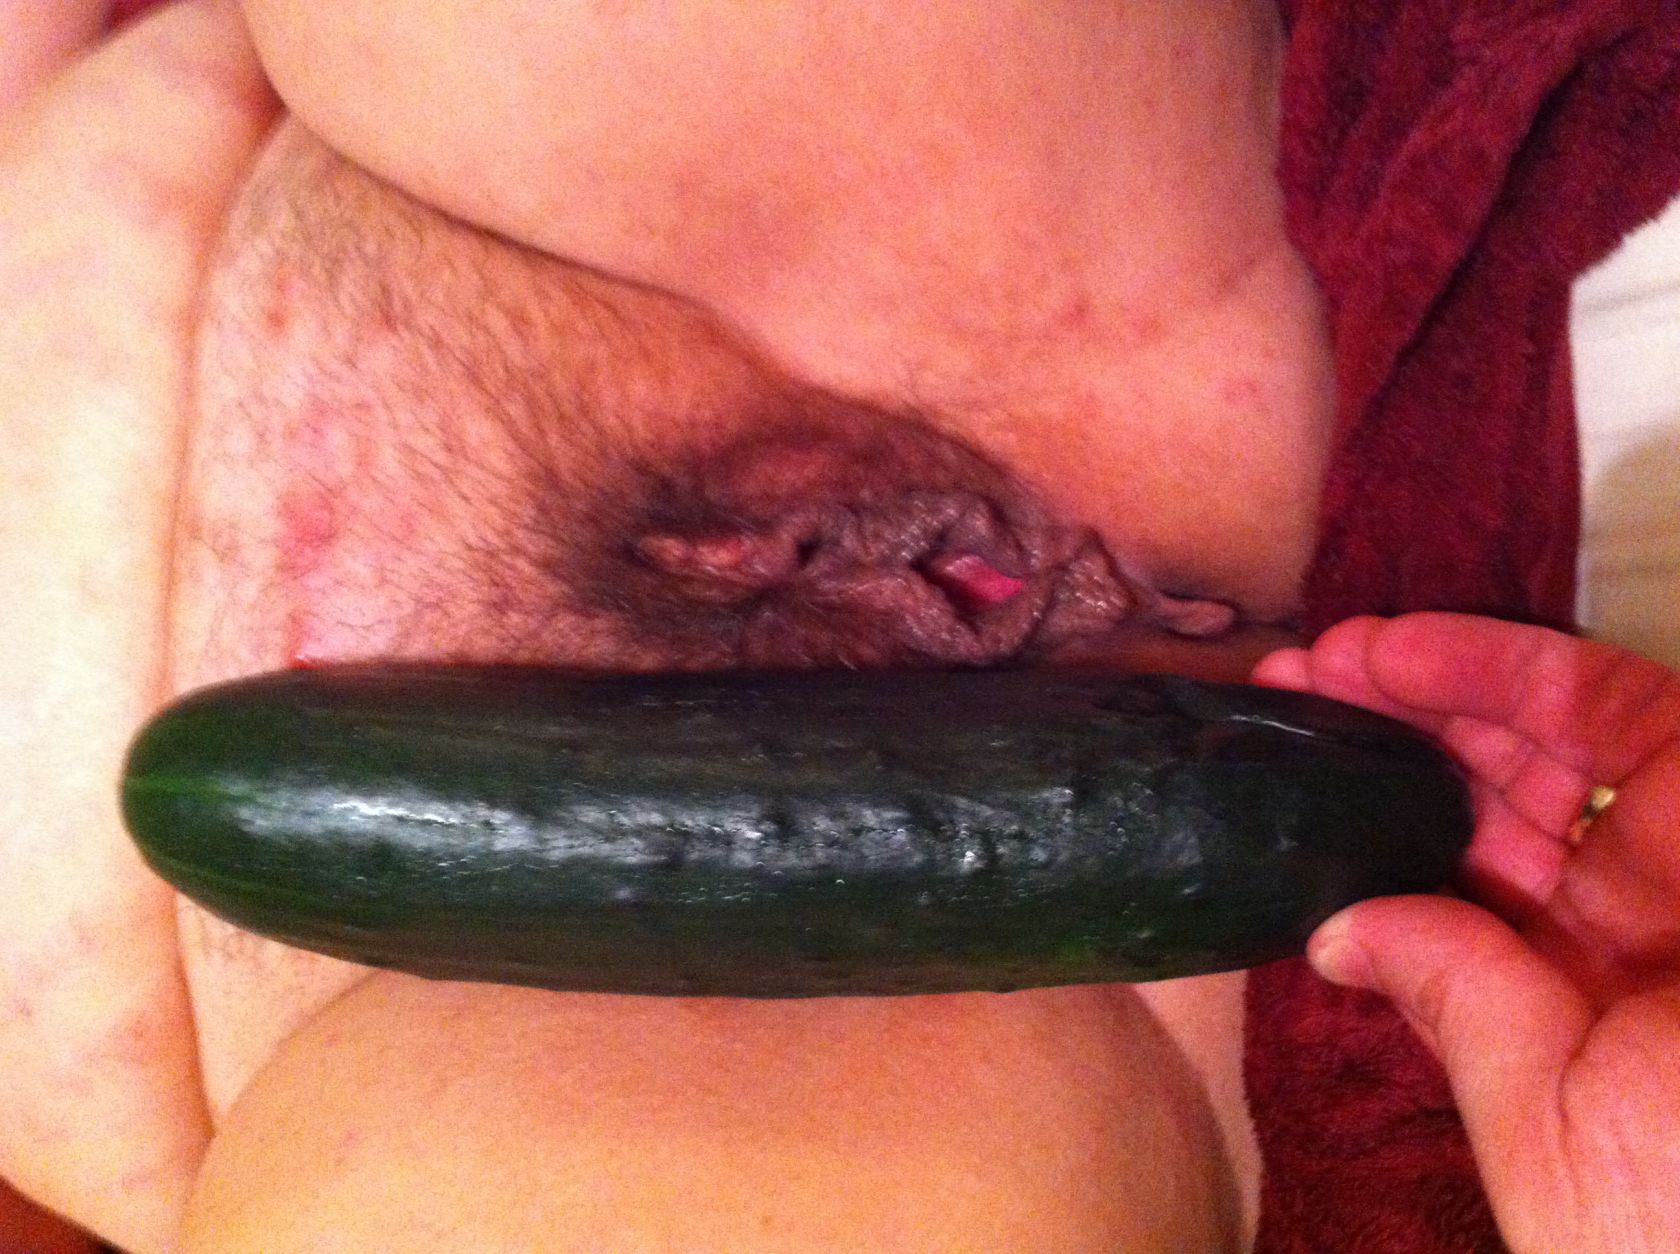 Cucumber 2